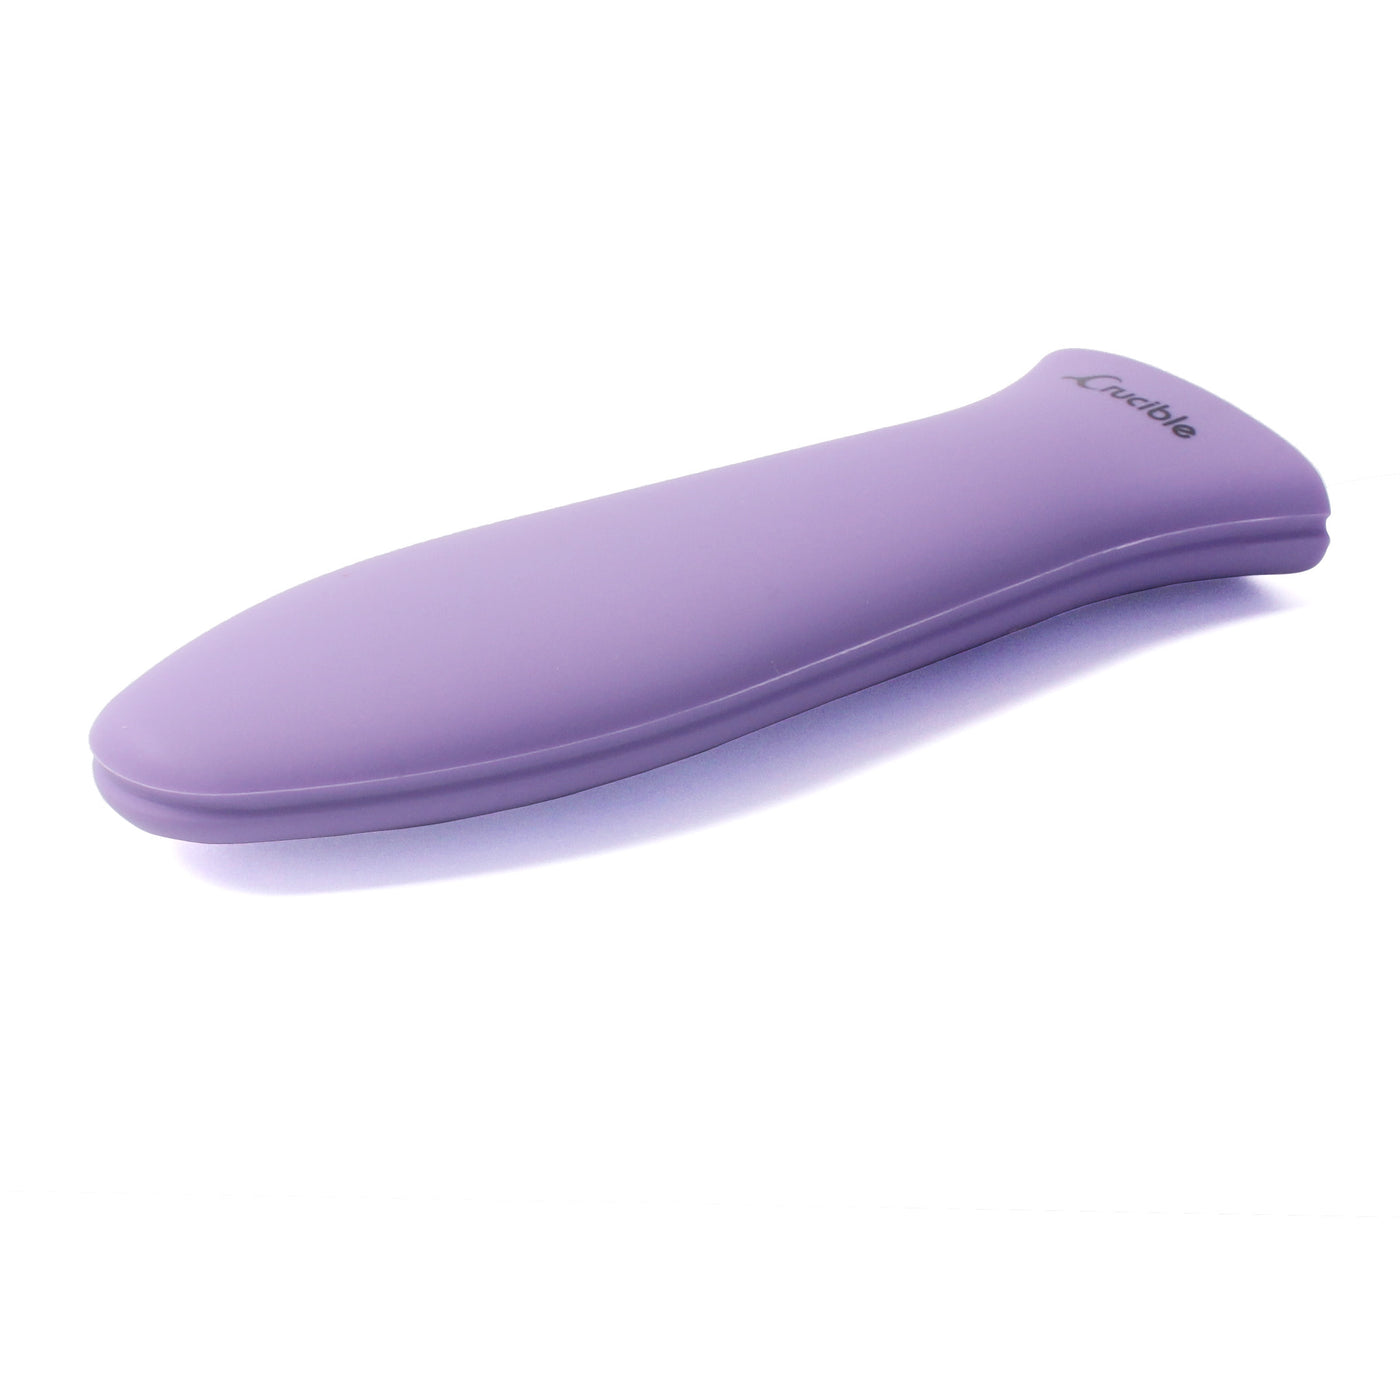 硅胶热手柄支架、隔热垫（紫色大号）、套筒握把、手柄套